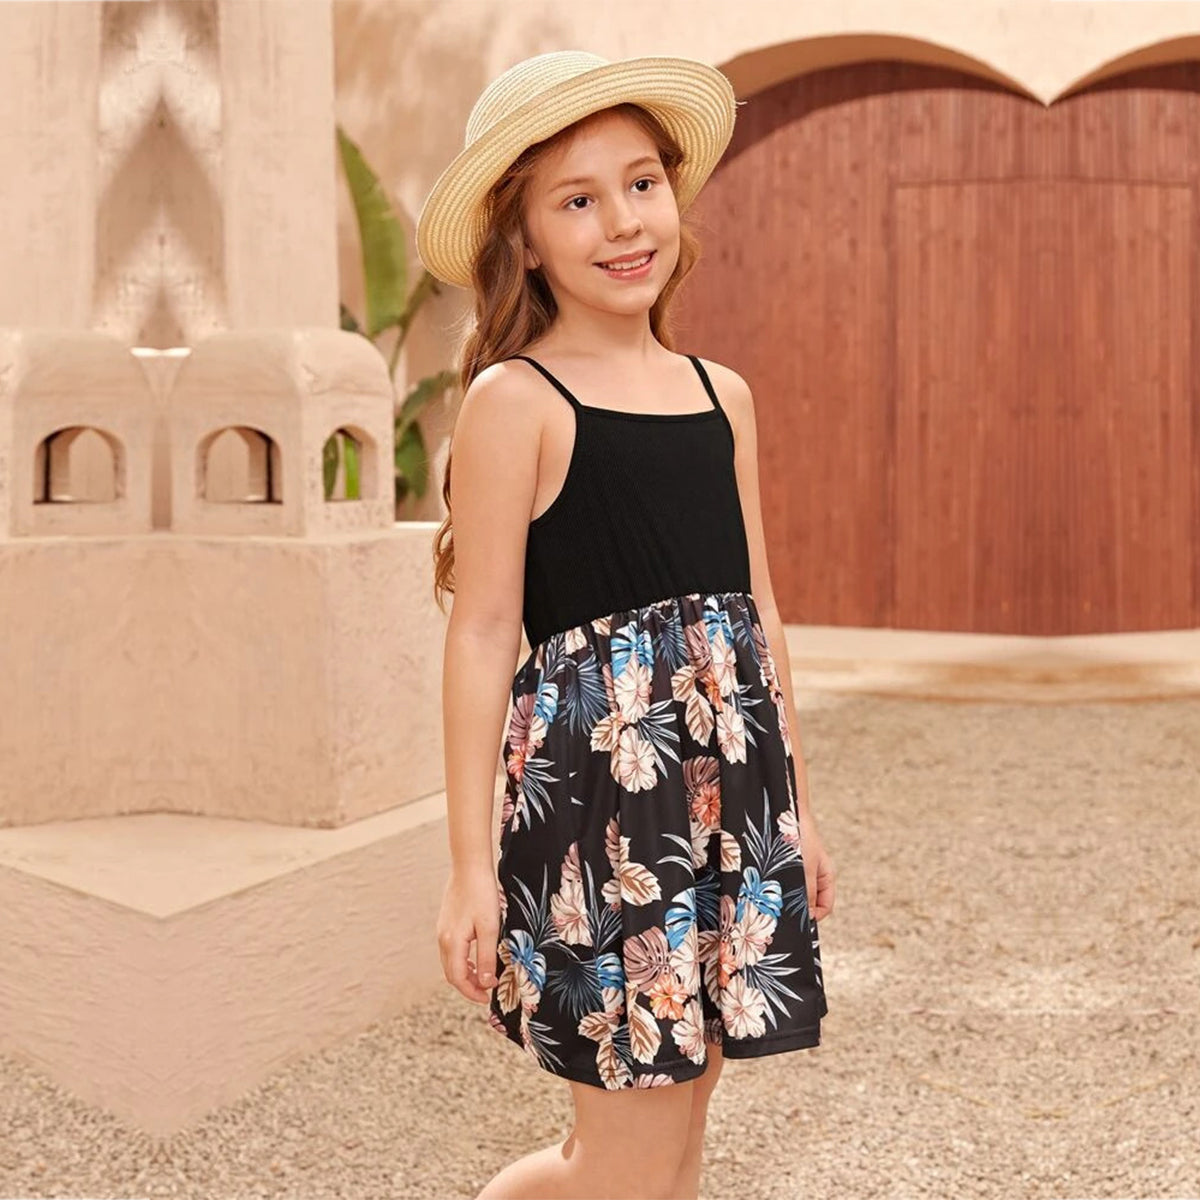 Venutaloza BabyGirl's Cotton Black Multicolor Foral Designer Frocks & Dresses for Kids.